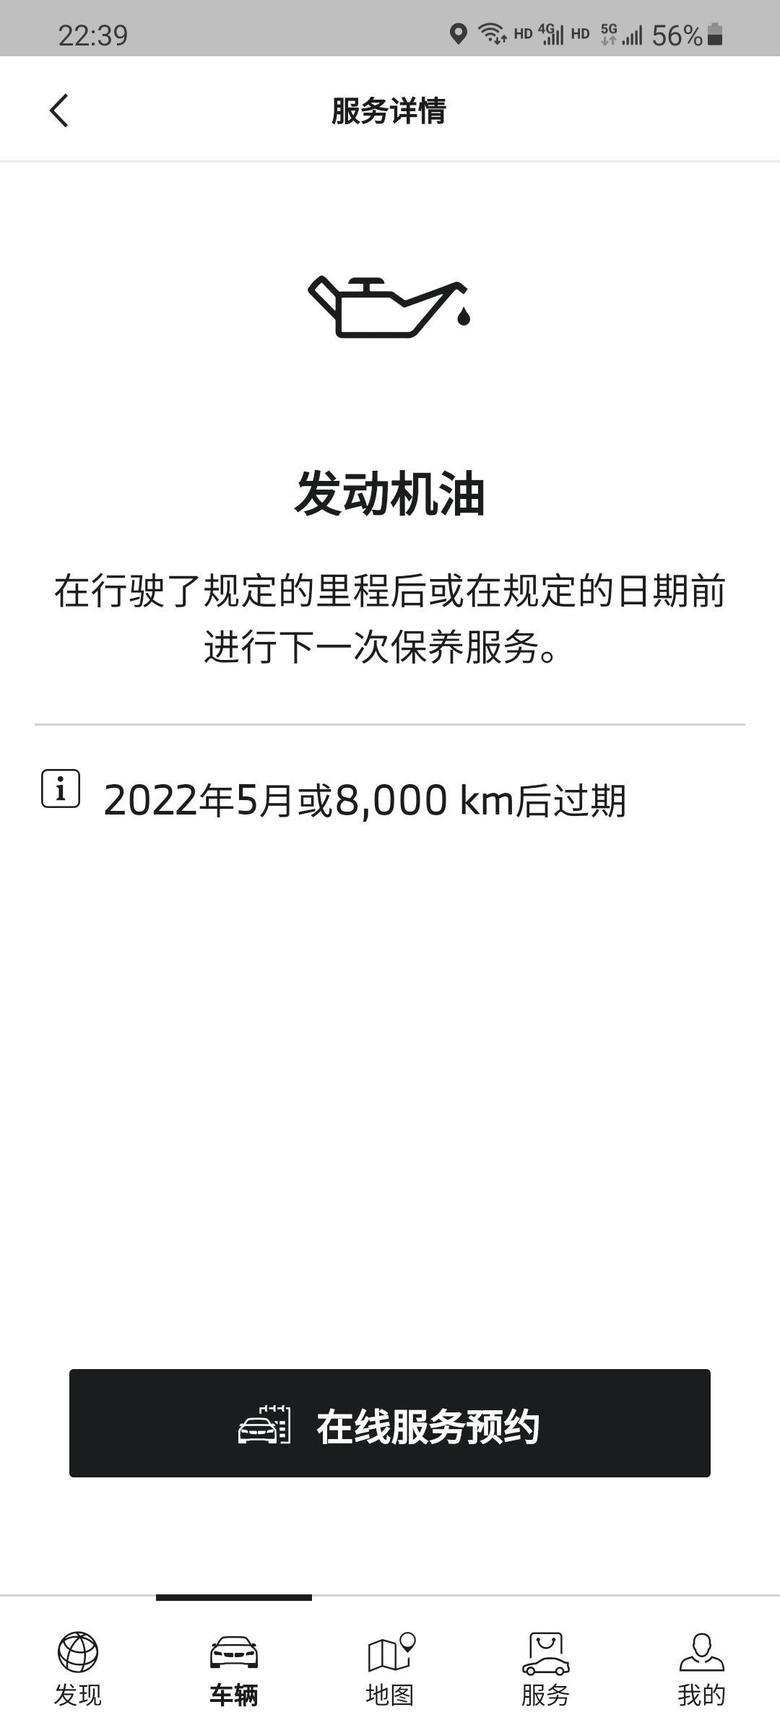 宝马7系 问个问题啊，为什么车里提示保养是8000公里以后？我现在车子都跑了5000公里，如果是这样那保养公里数就是13000公里？首保不是10000公里么？